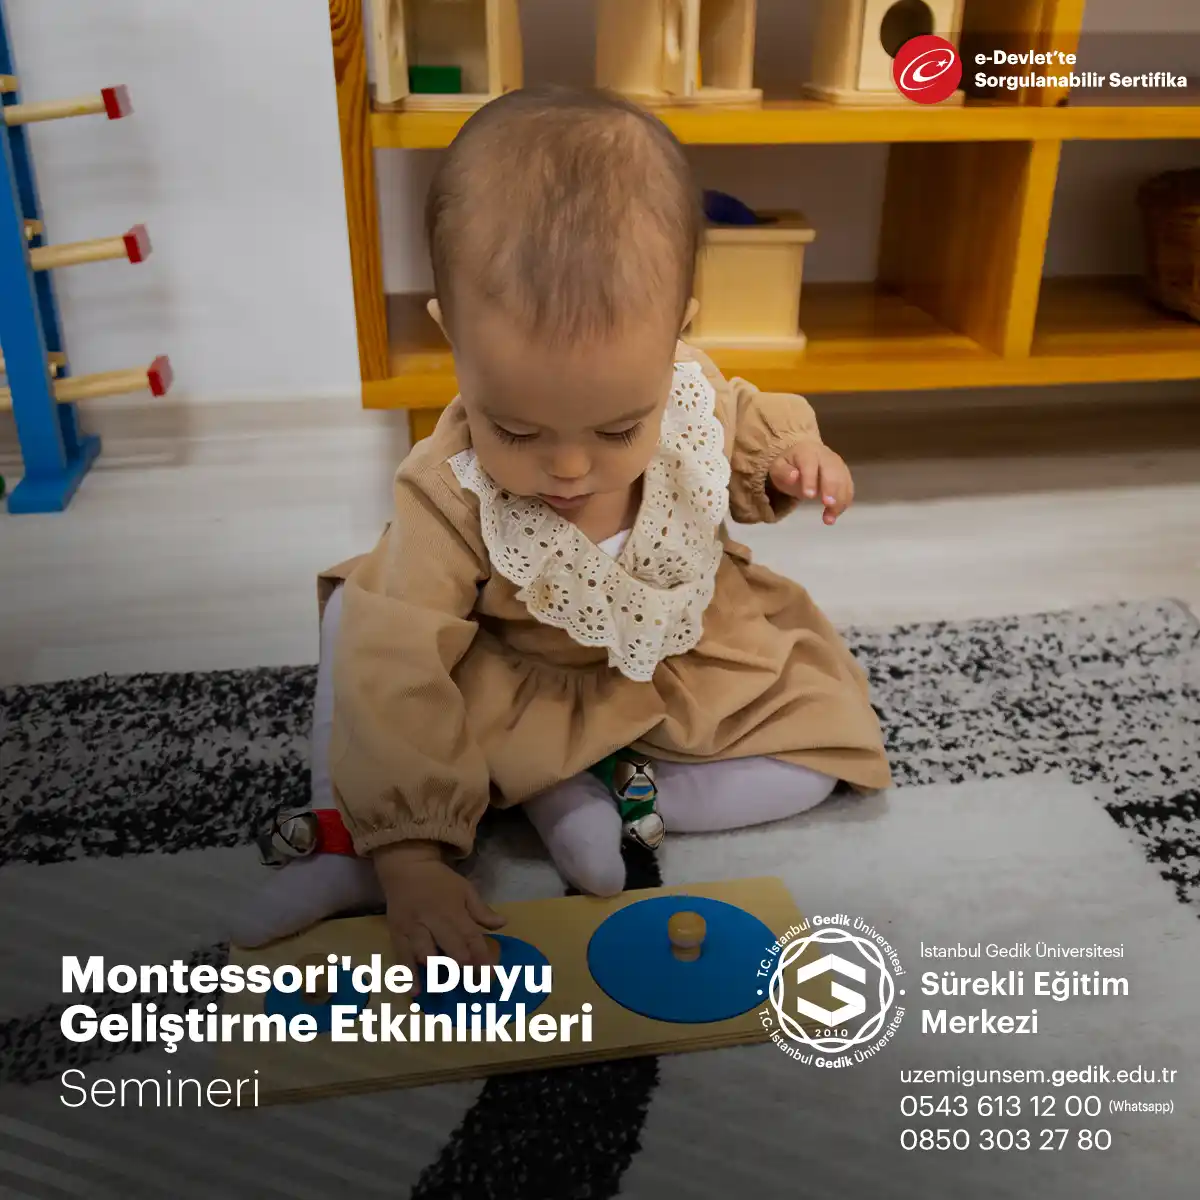 Montessori'de Duyu Geliştirme Etkinlikleri